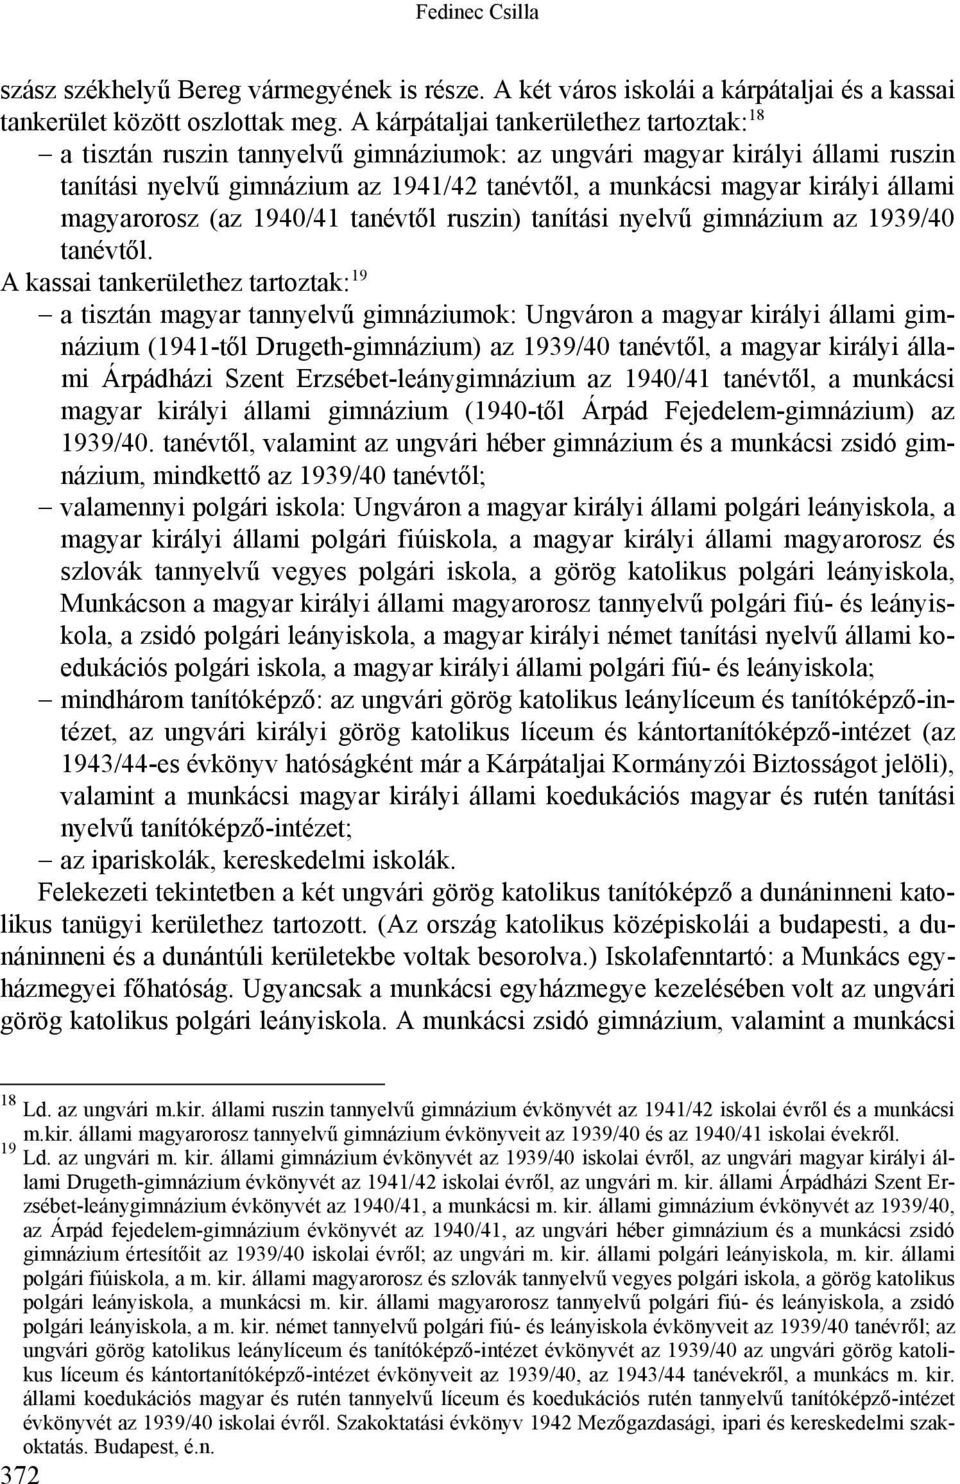 állami magyarorosz (az 1940/41 tanévtől ruszin) tanítási nyelvű gimnázium az 1939/40 tanévtől.